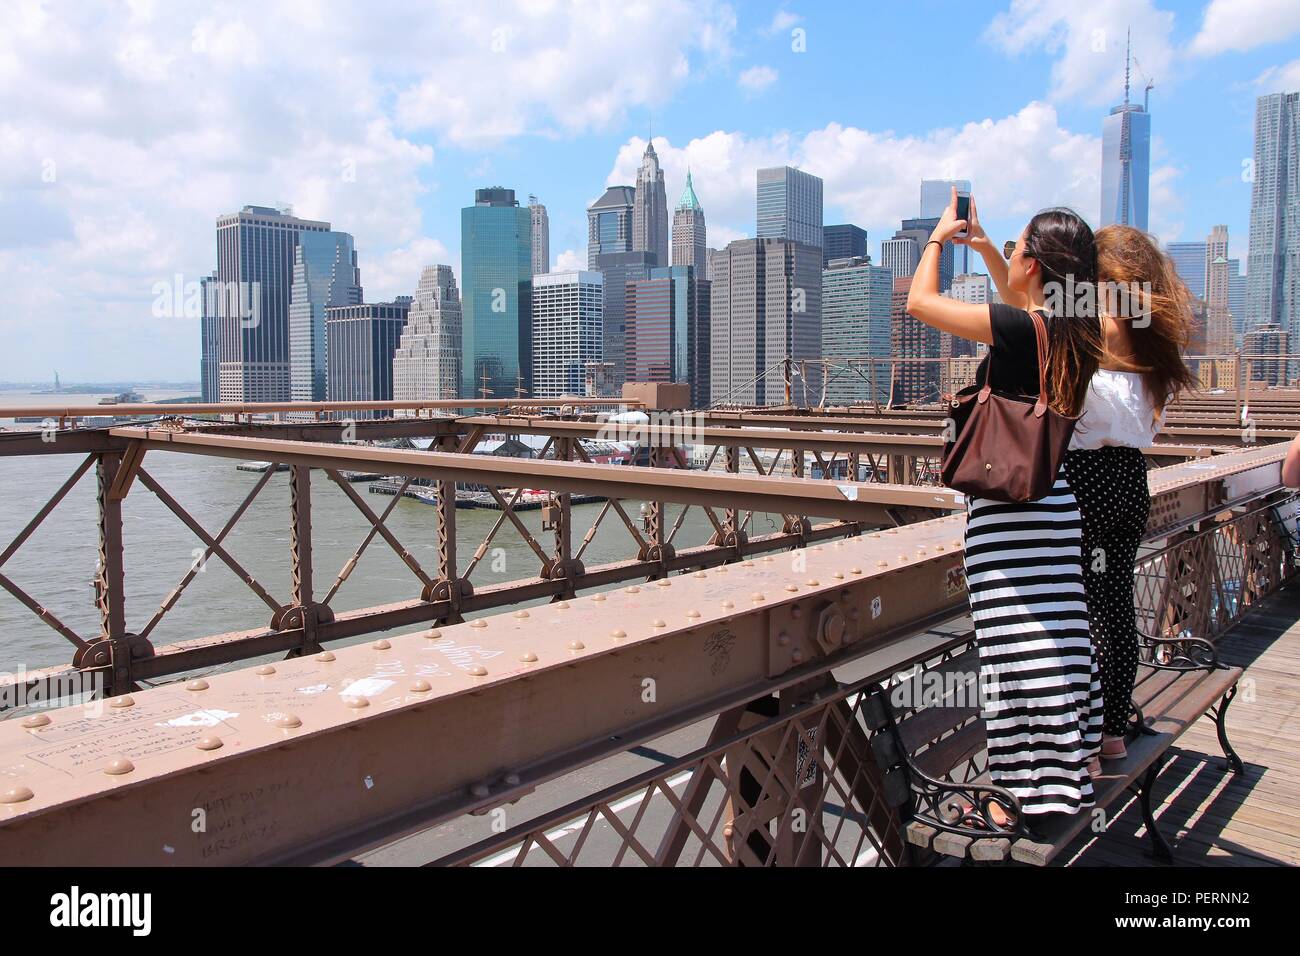 NEW YORK, USA - 5 juillet 2013 : Les femmes prennent les photos de pont de Brooklyn à New York. Près de 19 millions de personnes vivent en zone métropolitaine de la ville de New York. Banque D'Images